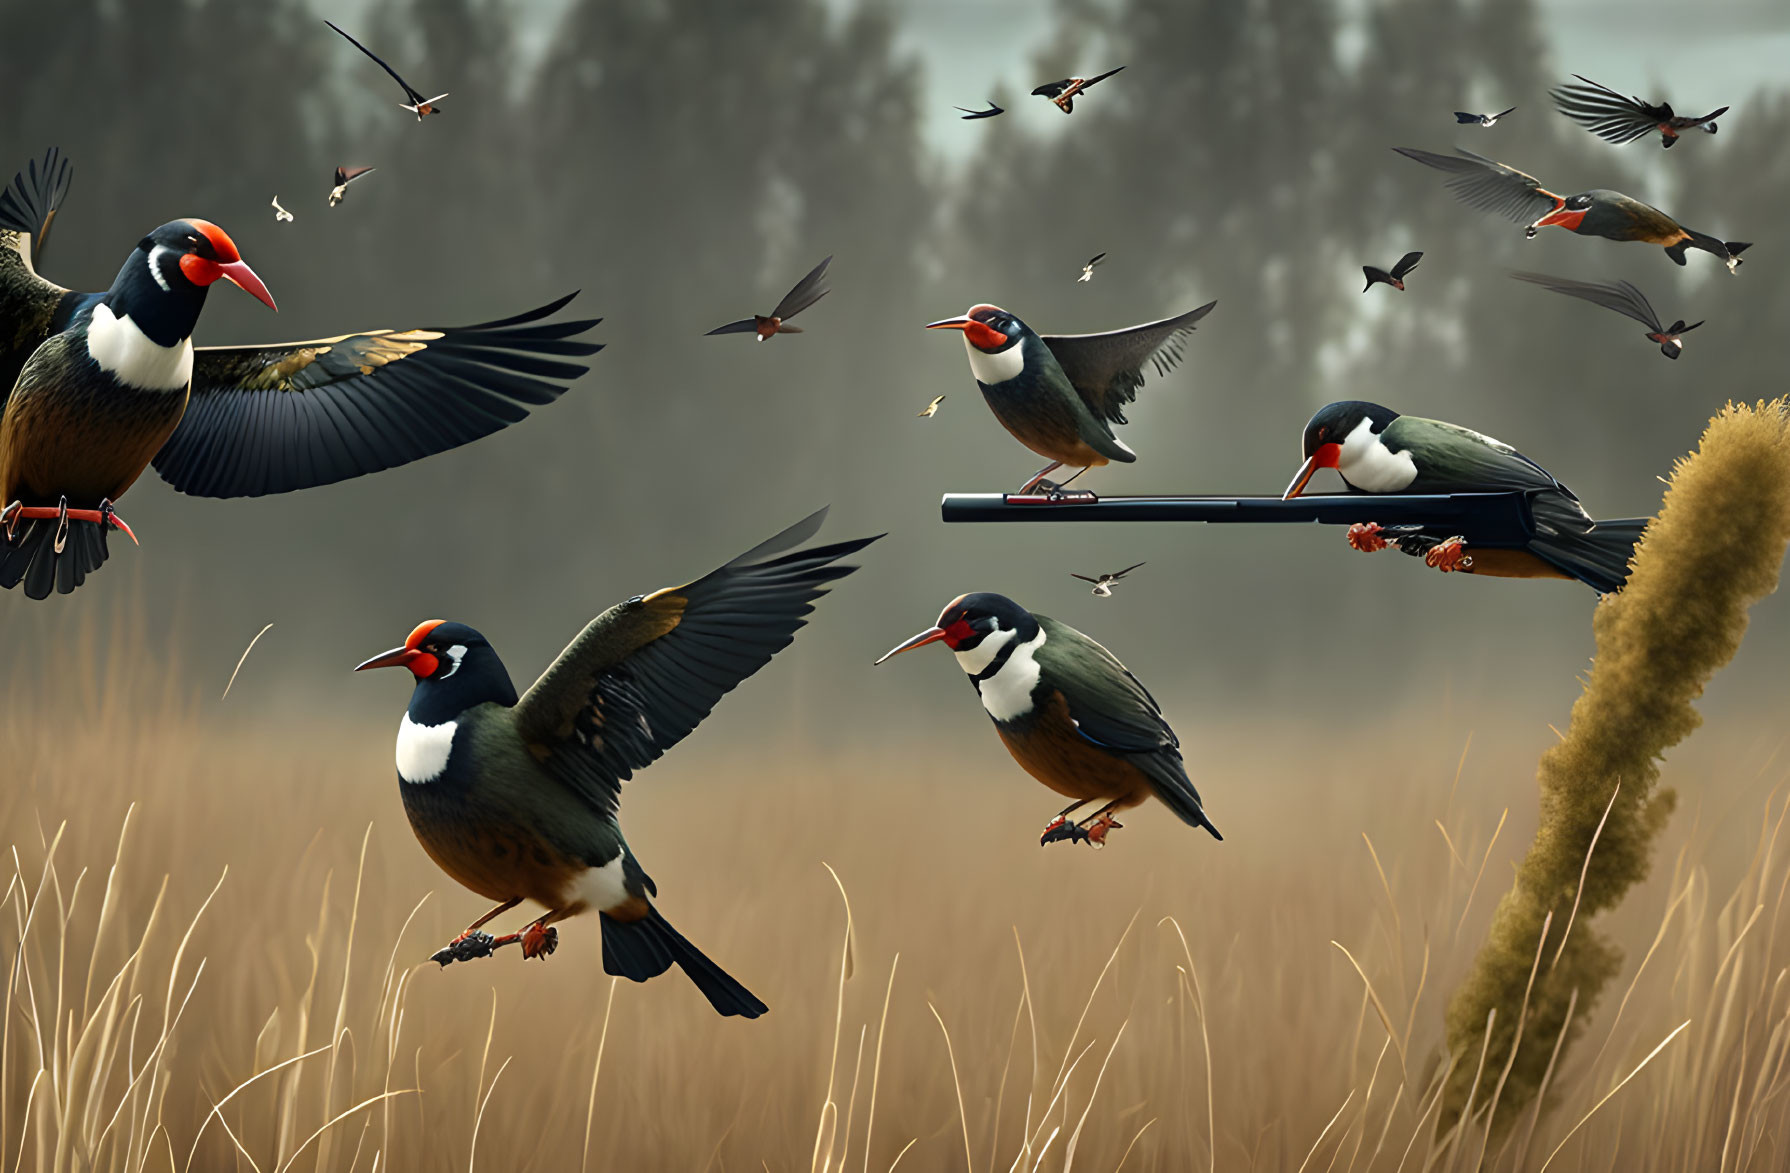 Colorful Birds Flying in Grassland Landscape